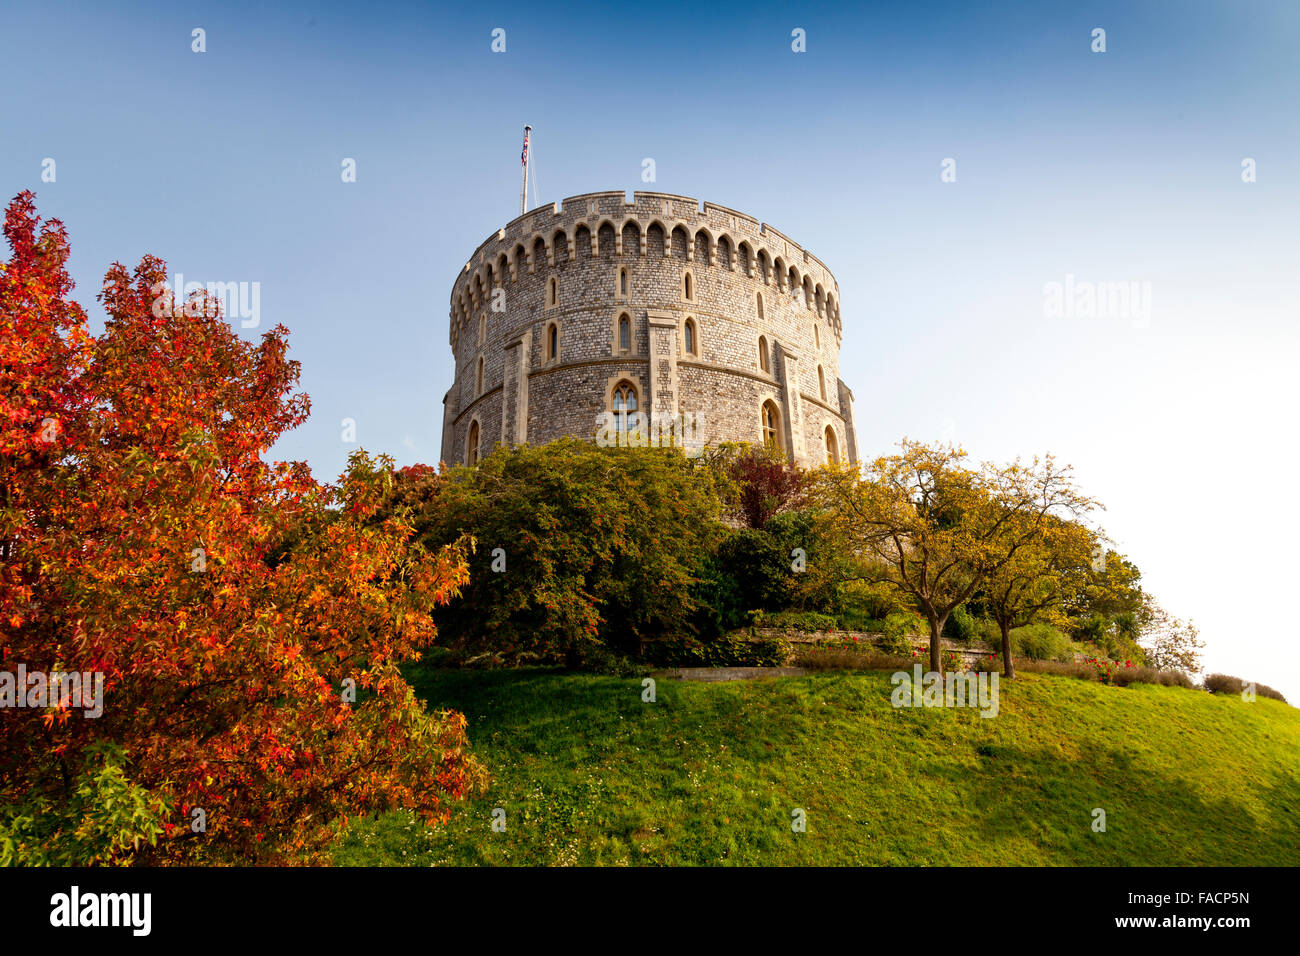 La tour ronde du château de Windsor, Berkshire, England, UK Banque D'Images